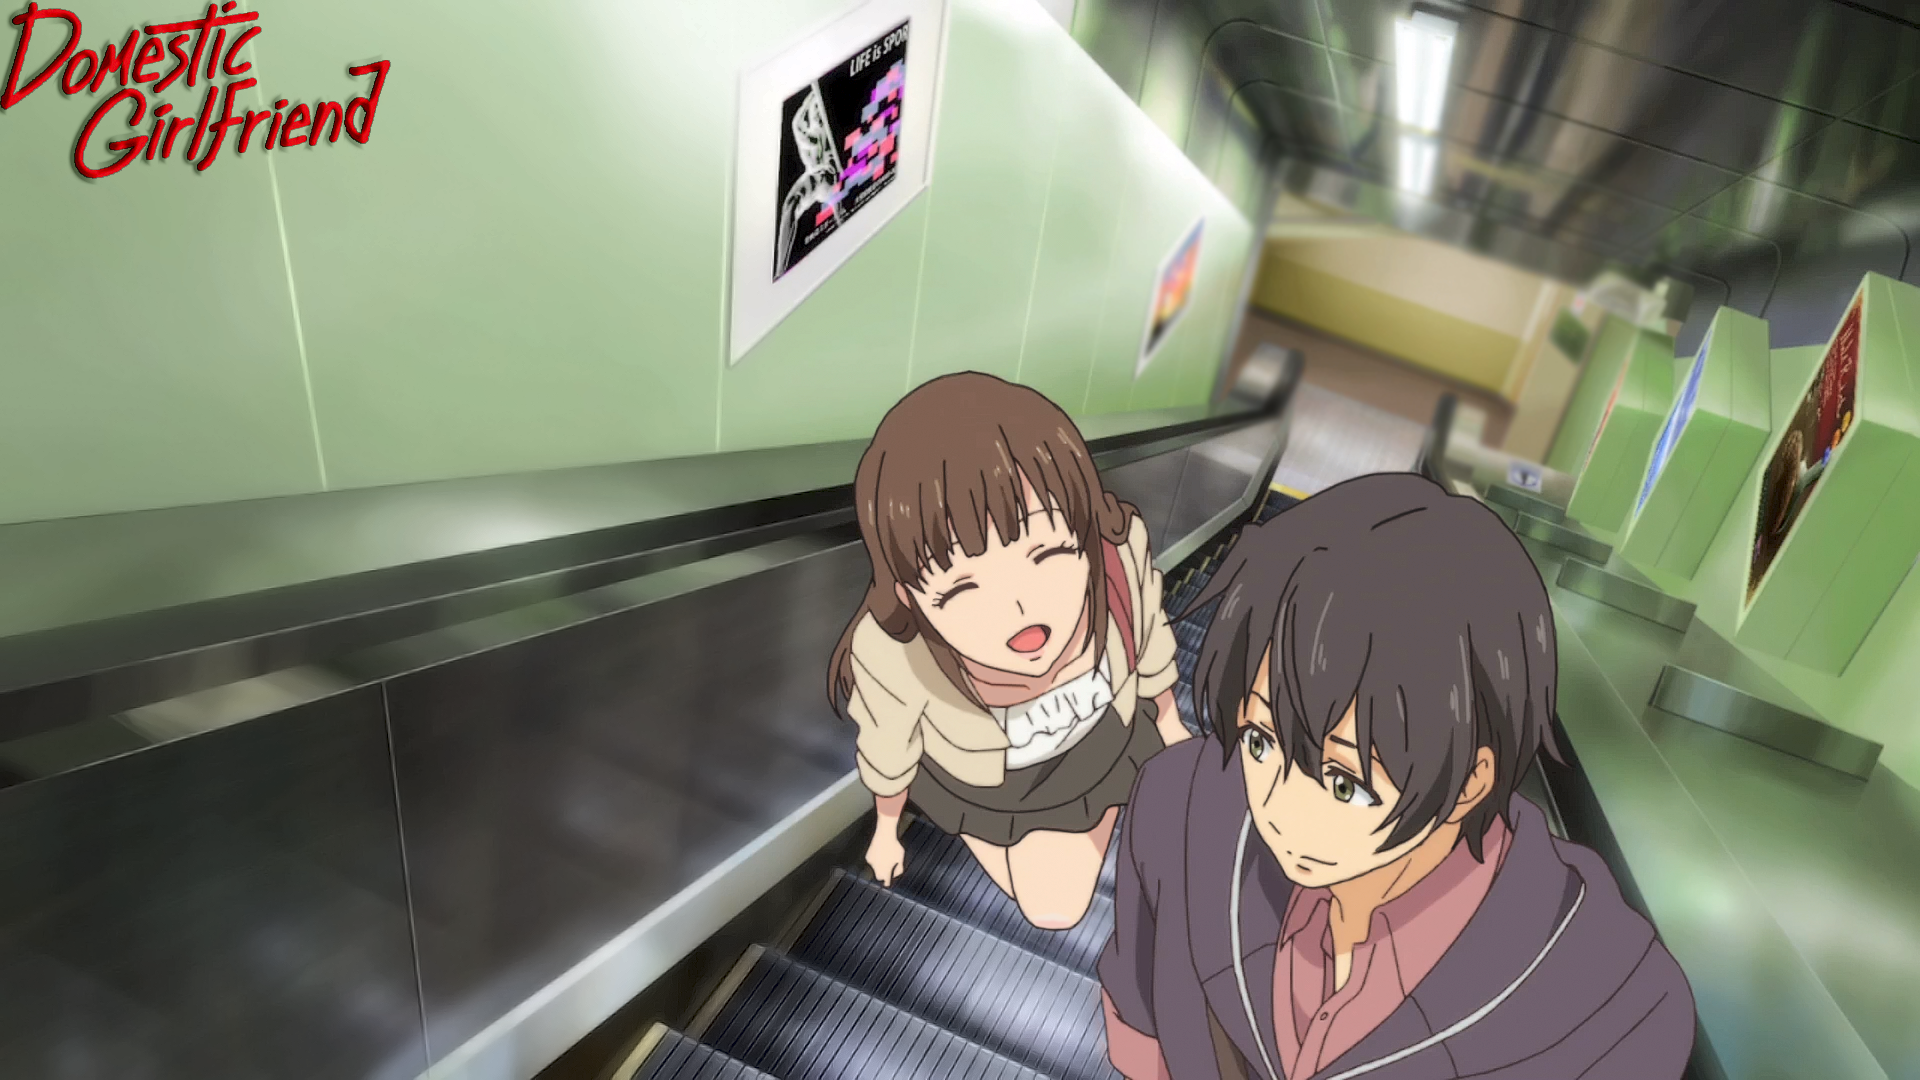 Anime Domestic Girlfriend HD Wallpaper by TearYui